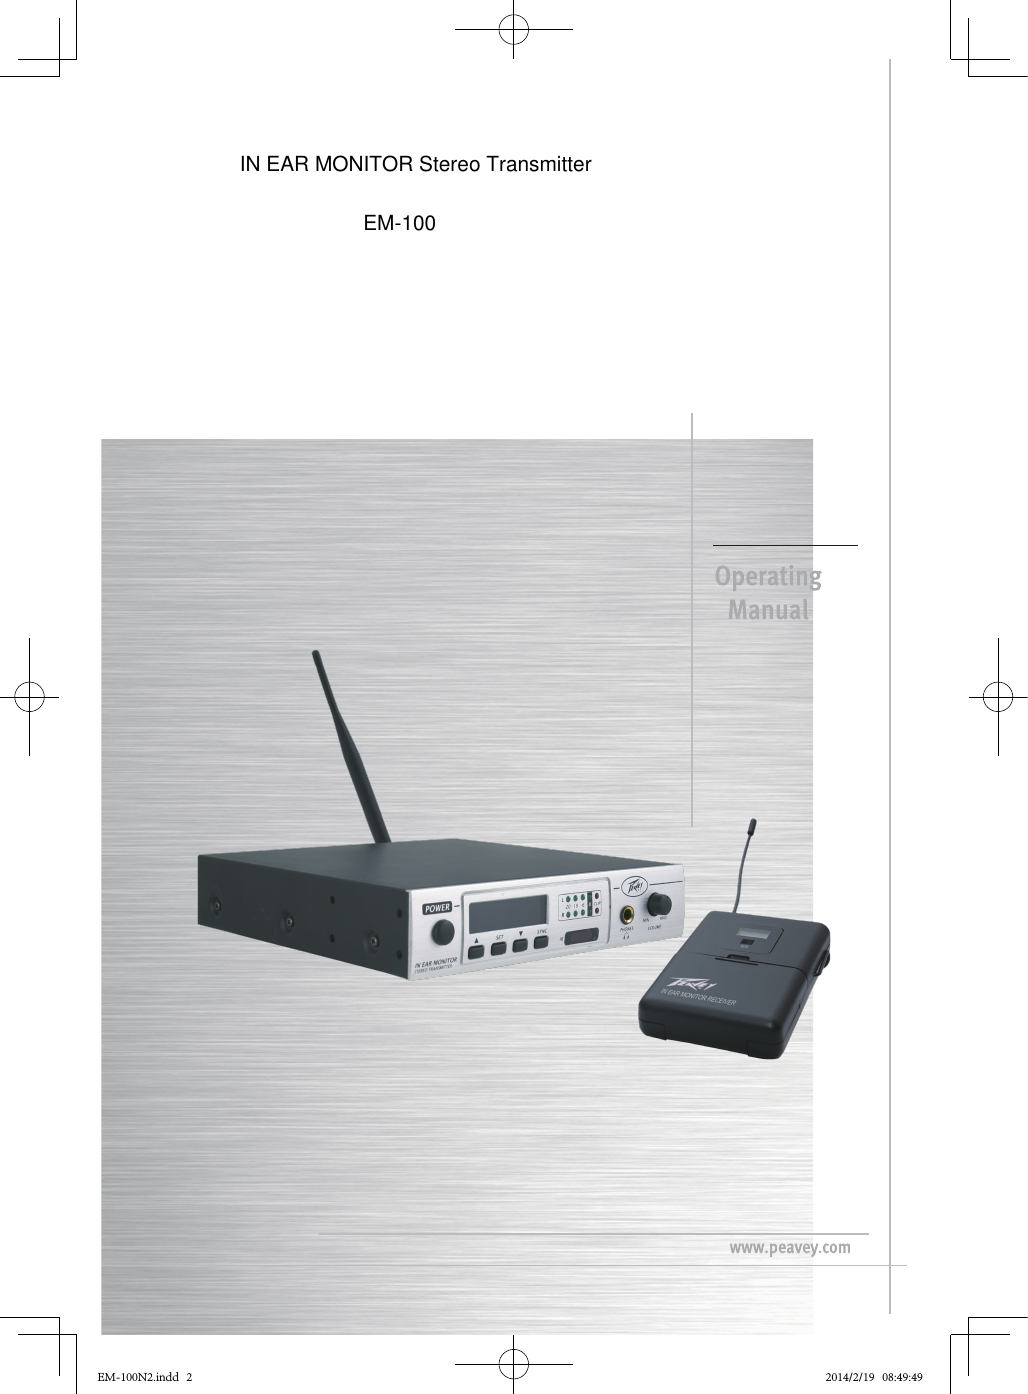 EM-100N2.indd   2 2014/2/19   08:49:49IN EAR MONITOR Stereo TransmitterEM-100